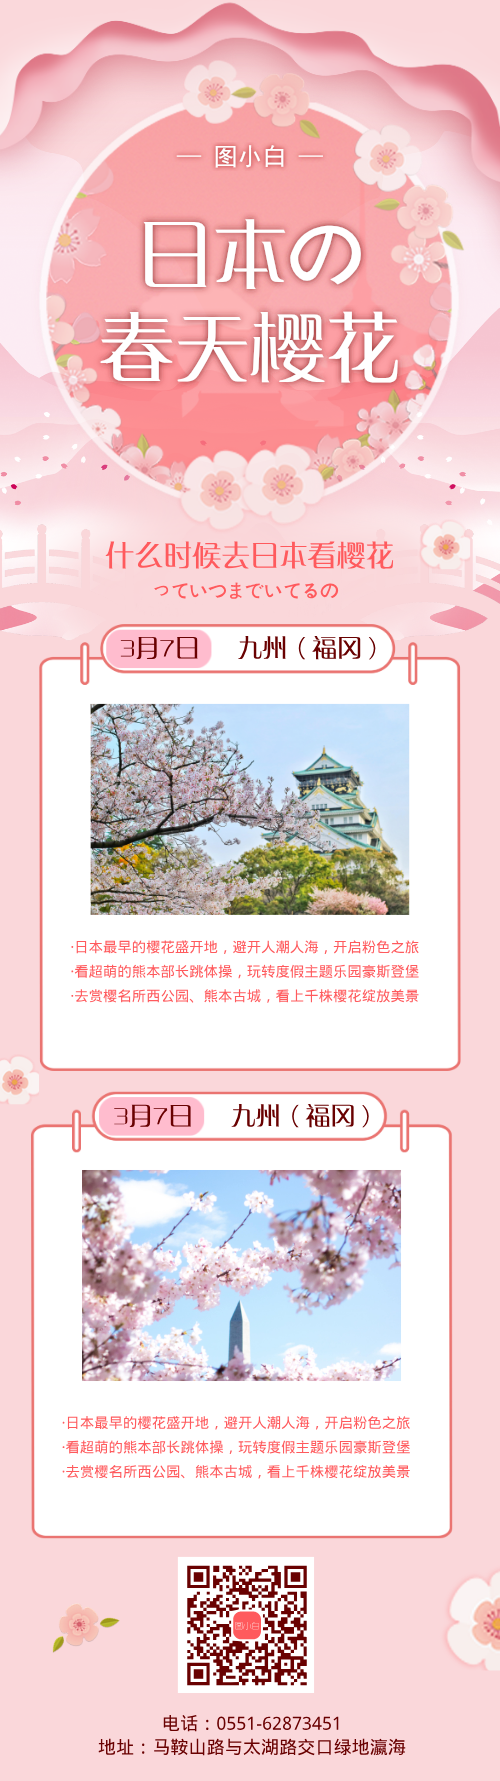 去日本看樱花旅游广告营销长图